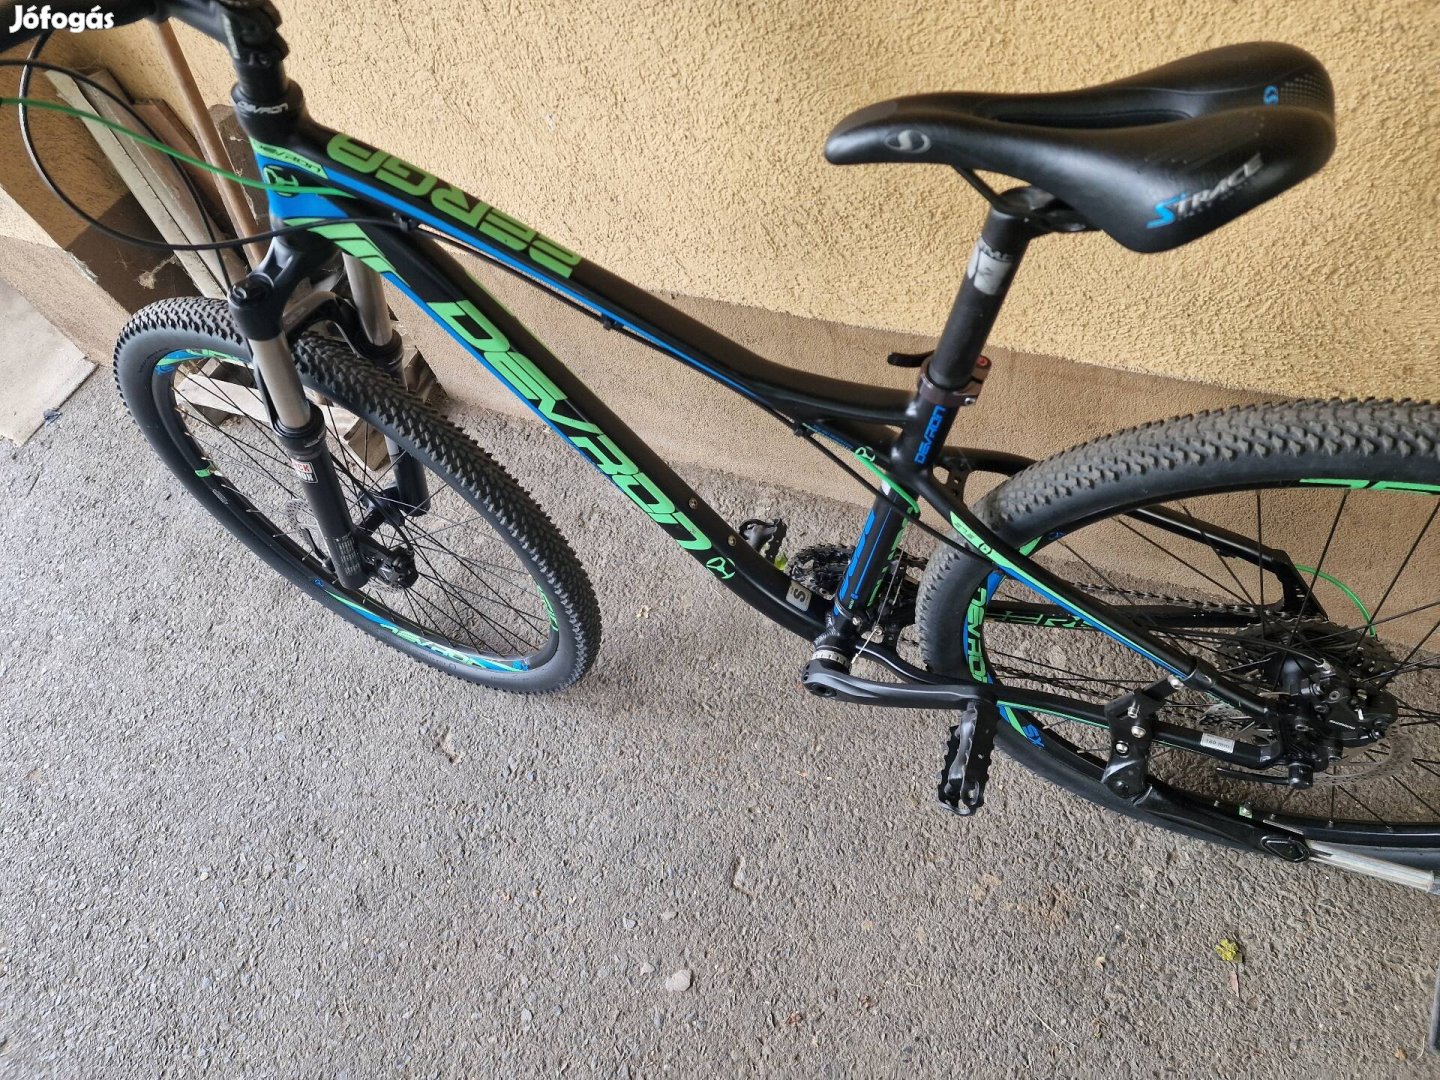 Enduro vázgeometriás 27,5" kerékpár Profi felszereltséggel eladó